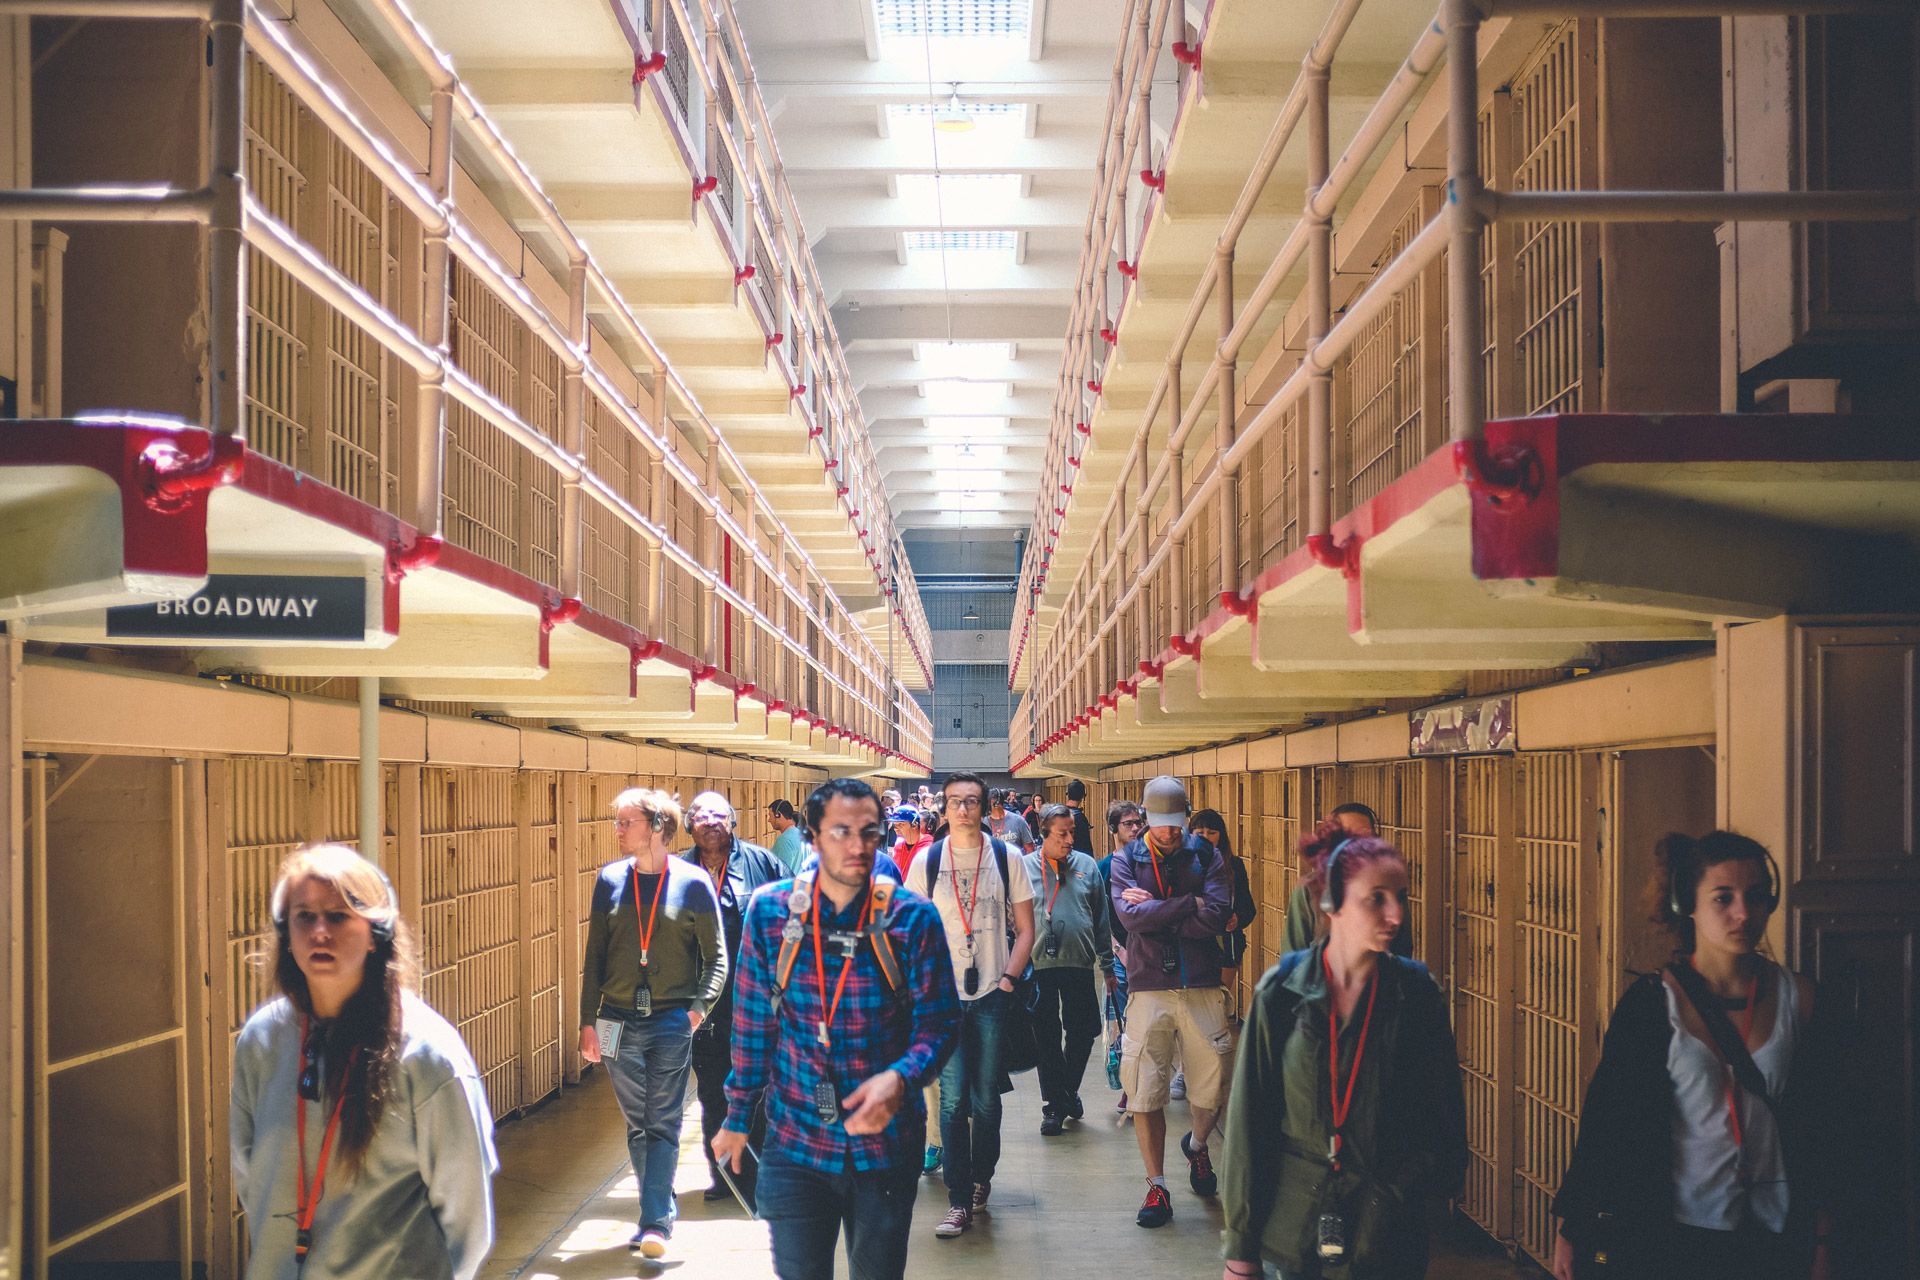 alcatraz east audio tour